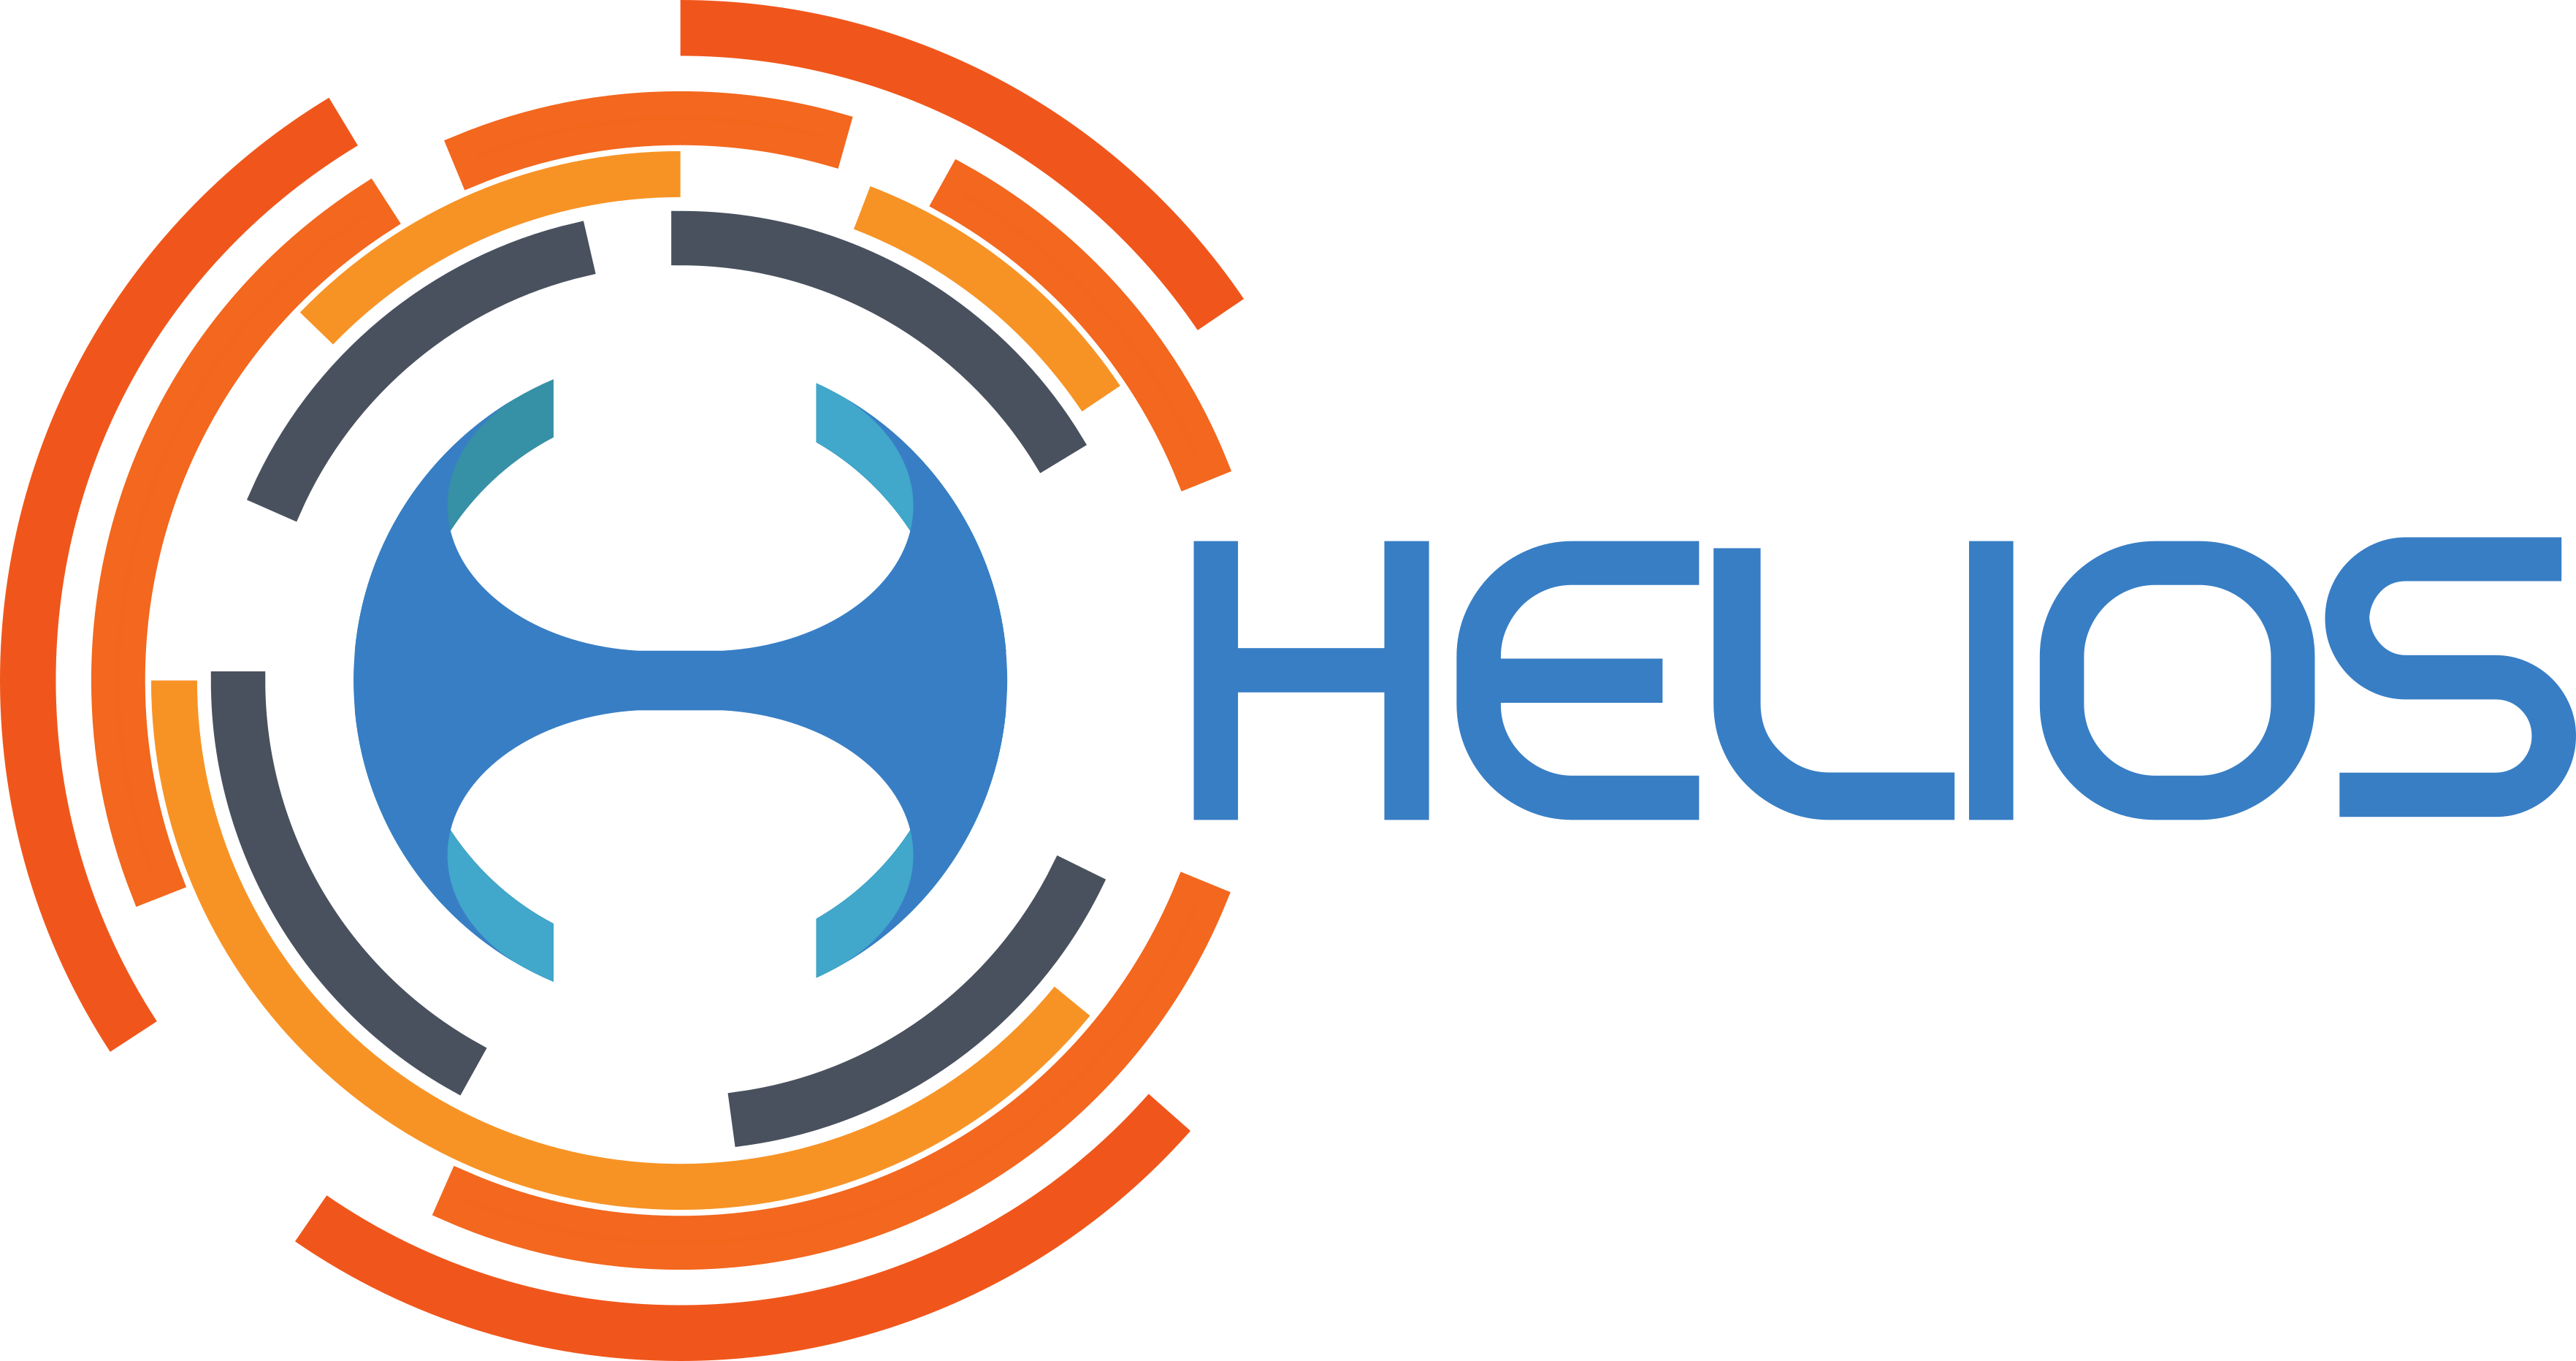 helios symbol greek